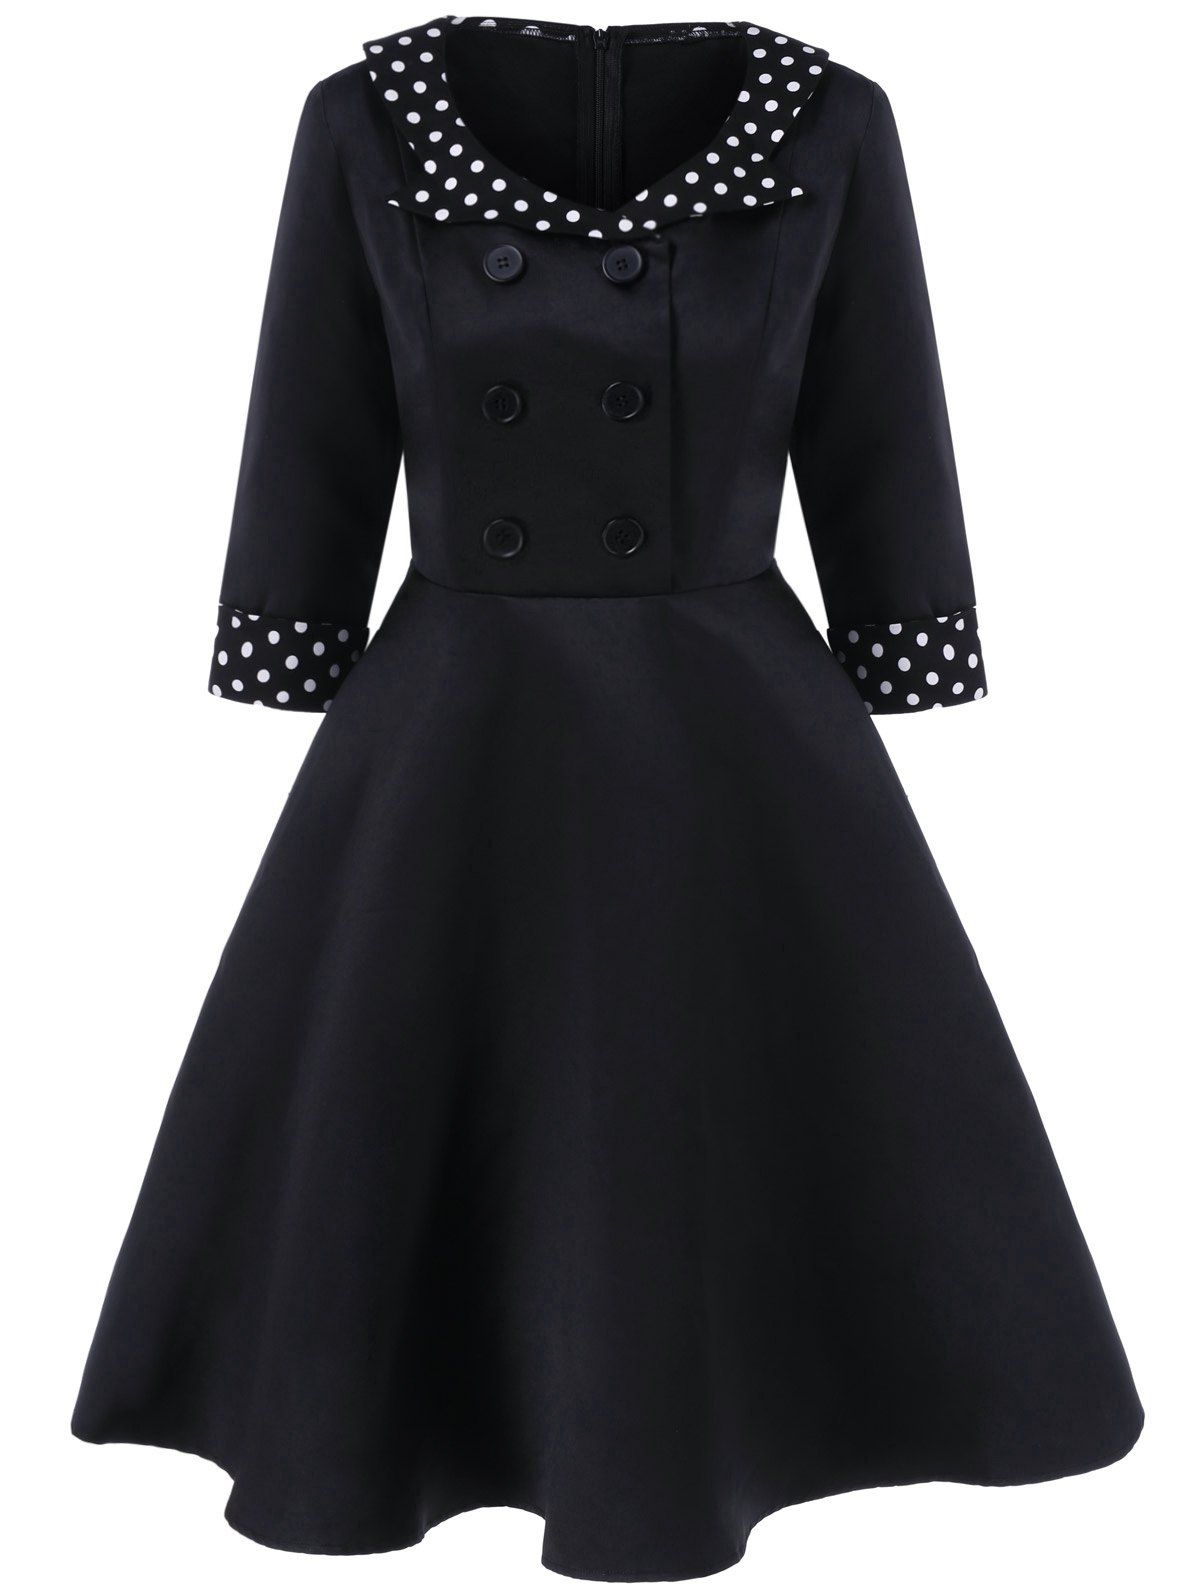 [17% OFF] 2021 Vintage Buttoned Polka Dot Swing Dress In BLACK | DressLily